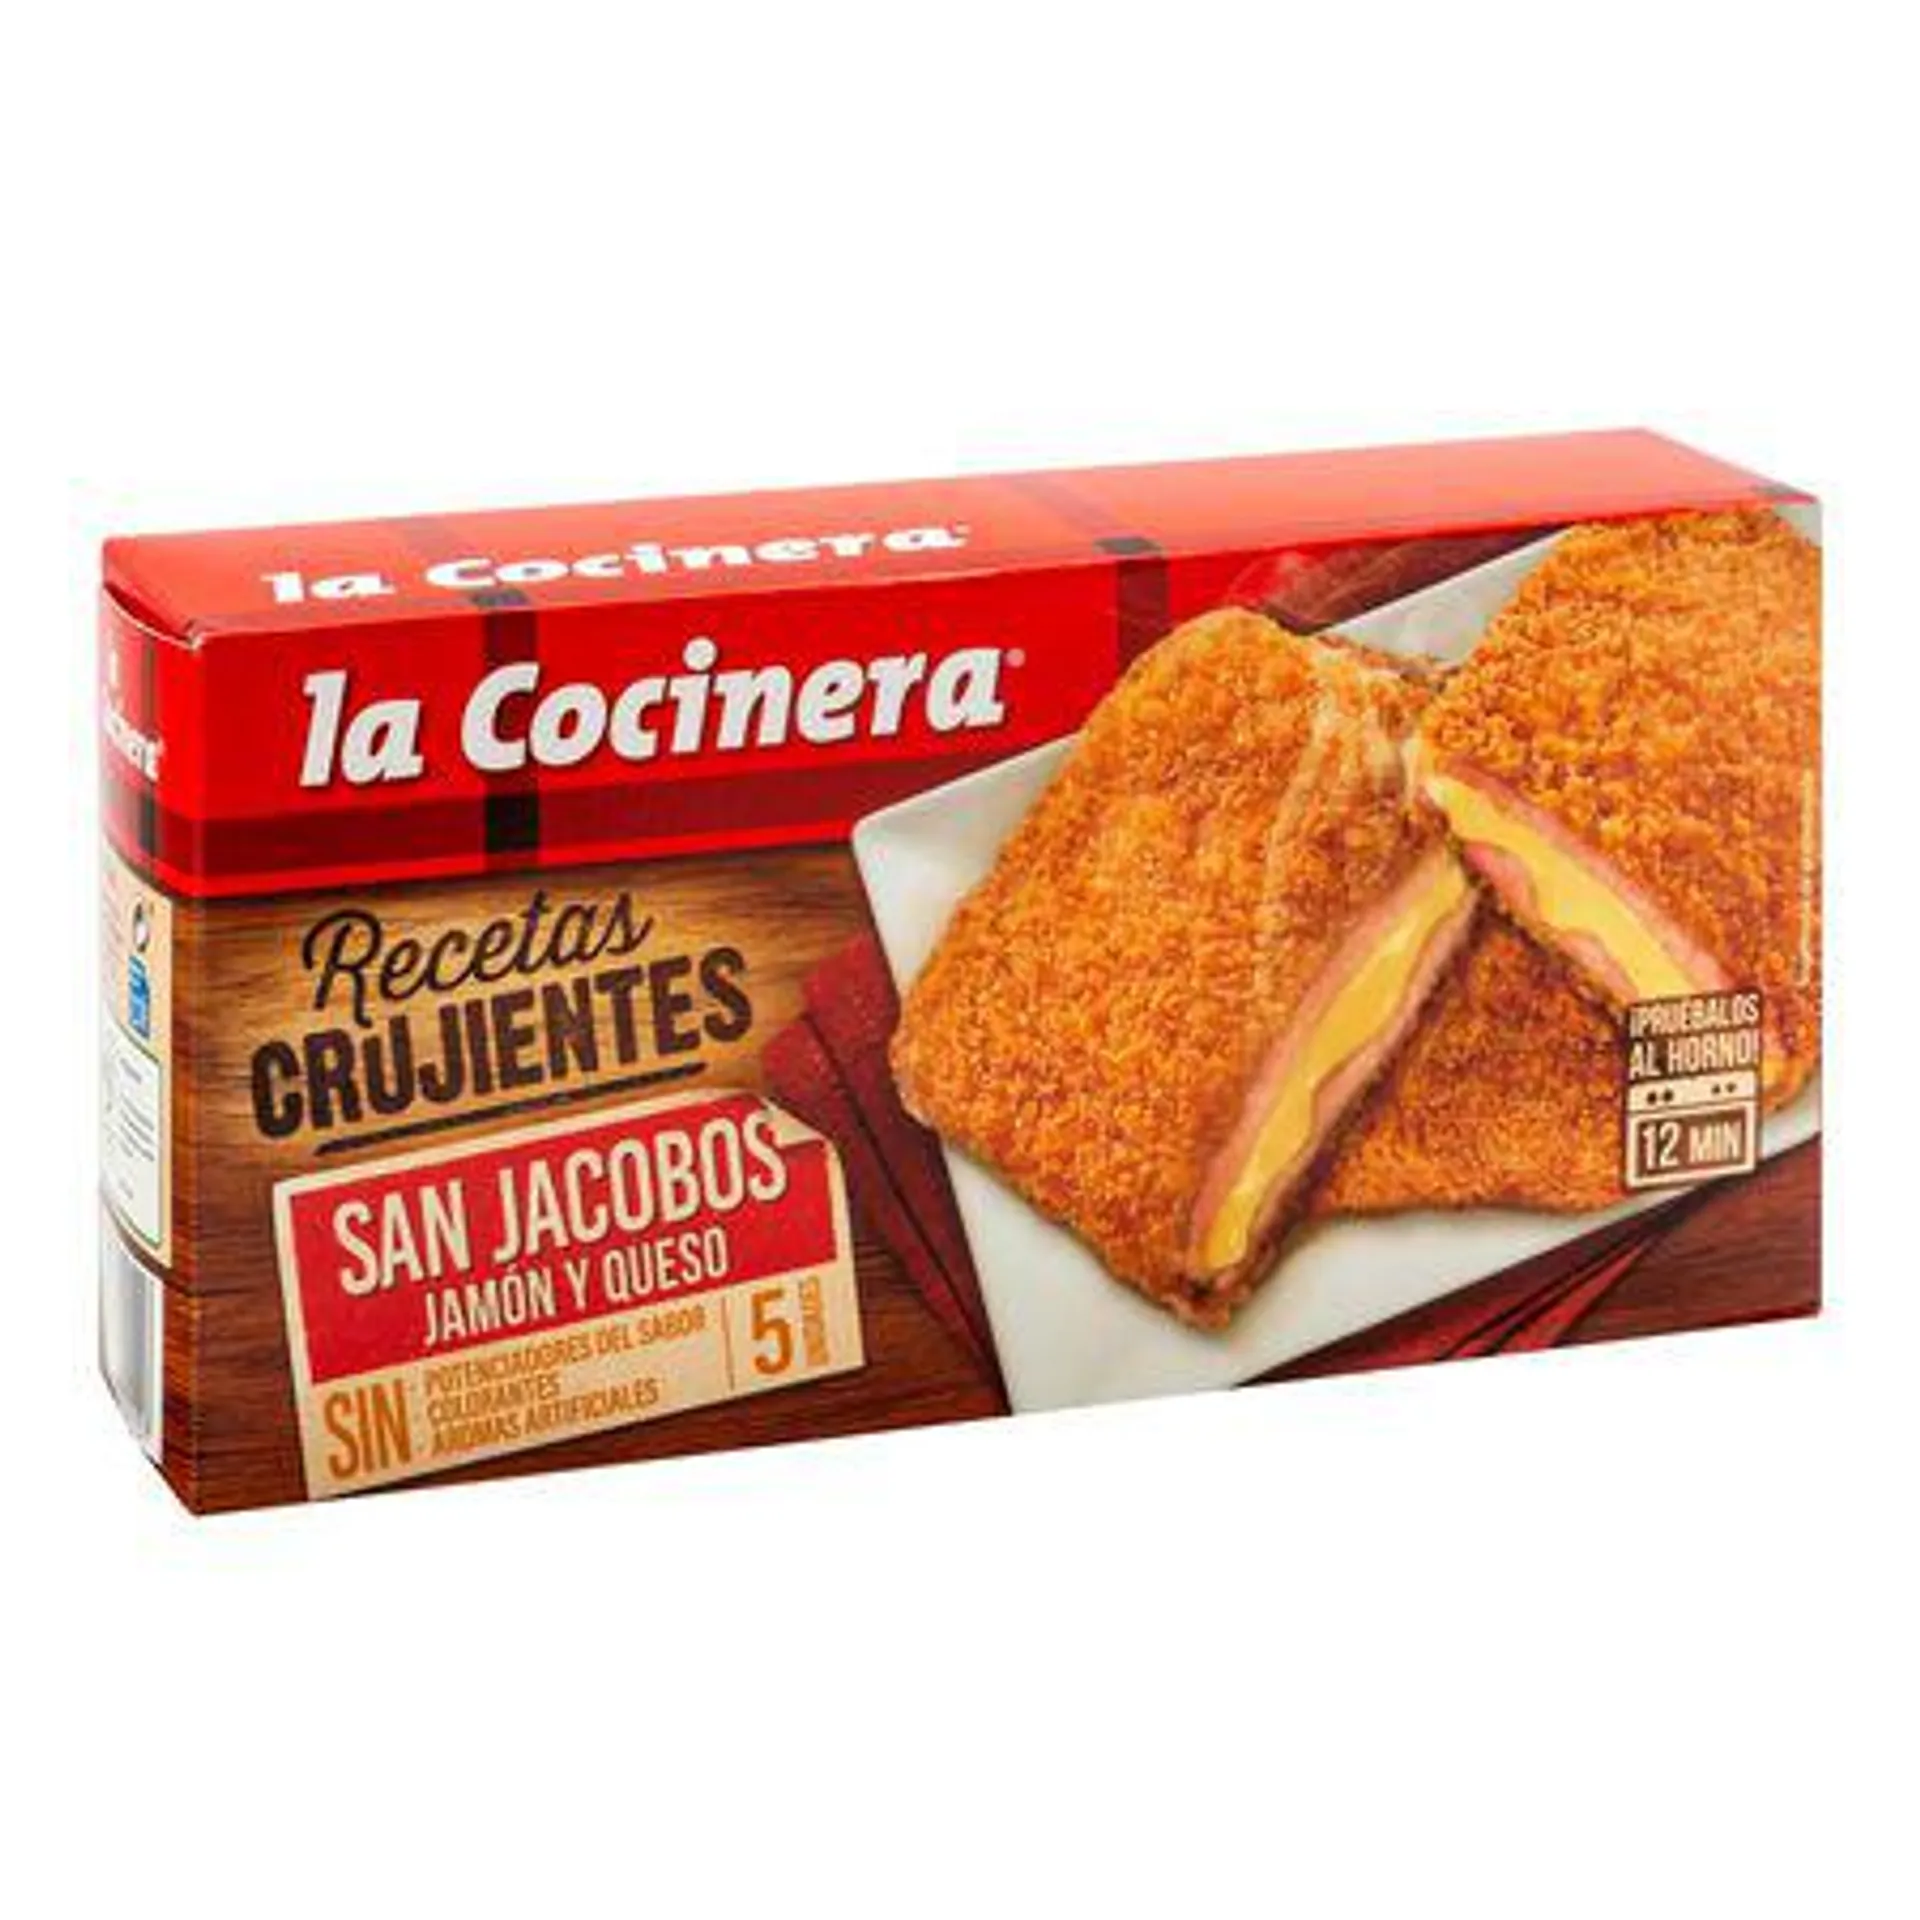 San jacobos La Cocinera 388g